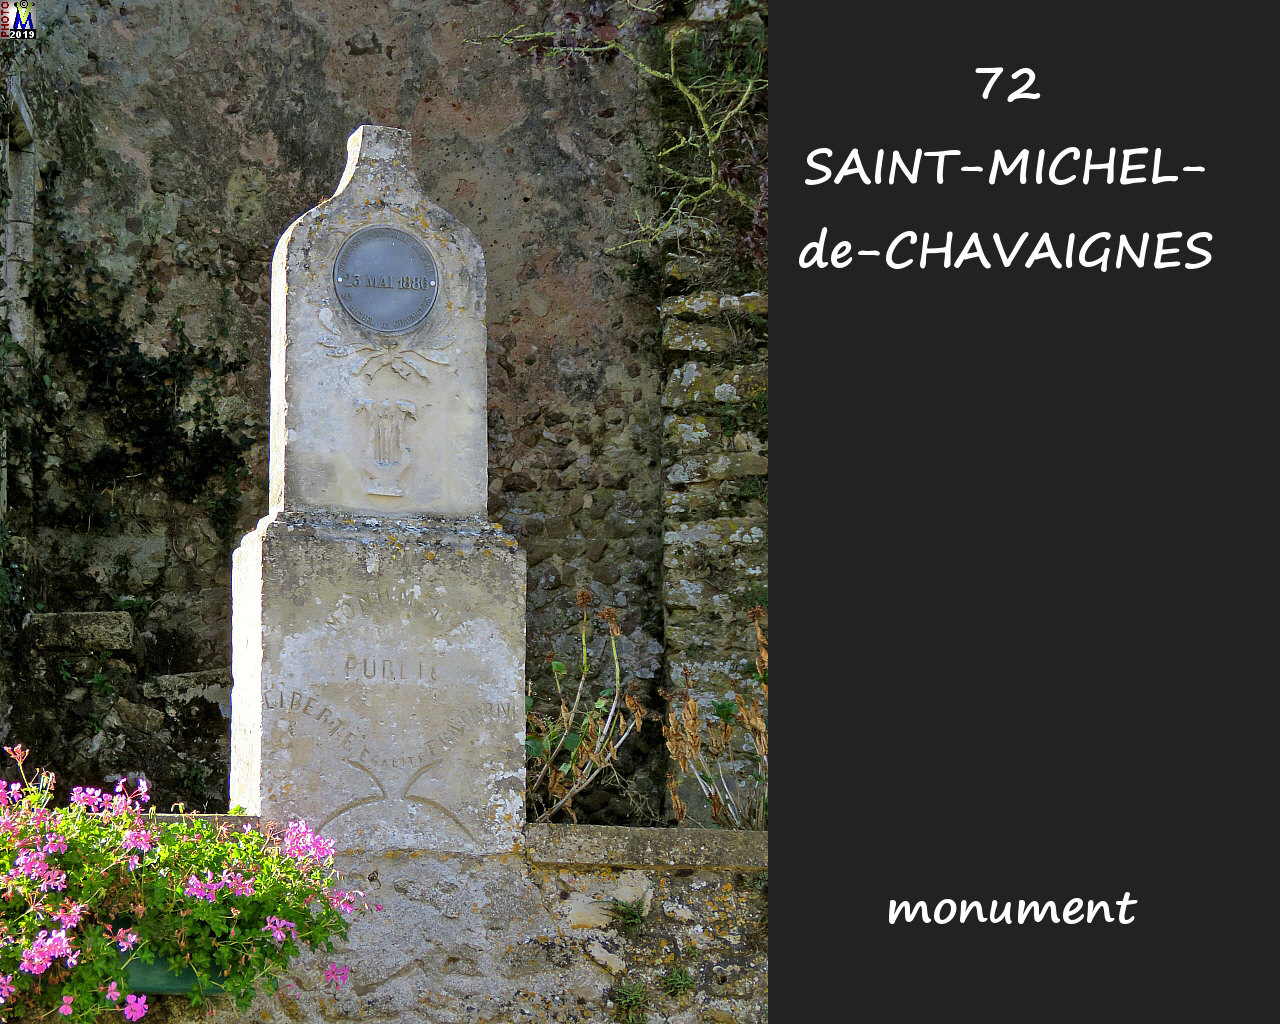 72StMICHEL-CHAVAIGNES_monument_100.jpg